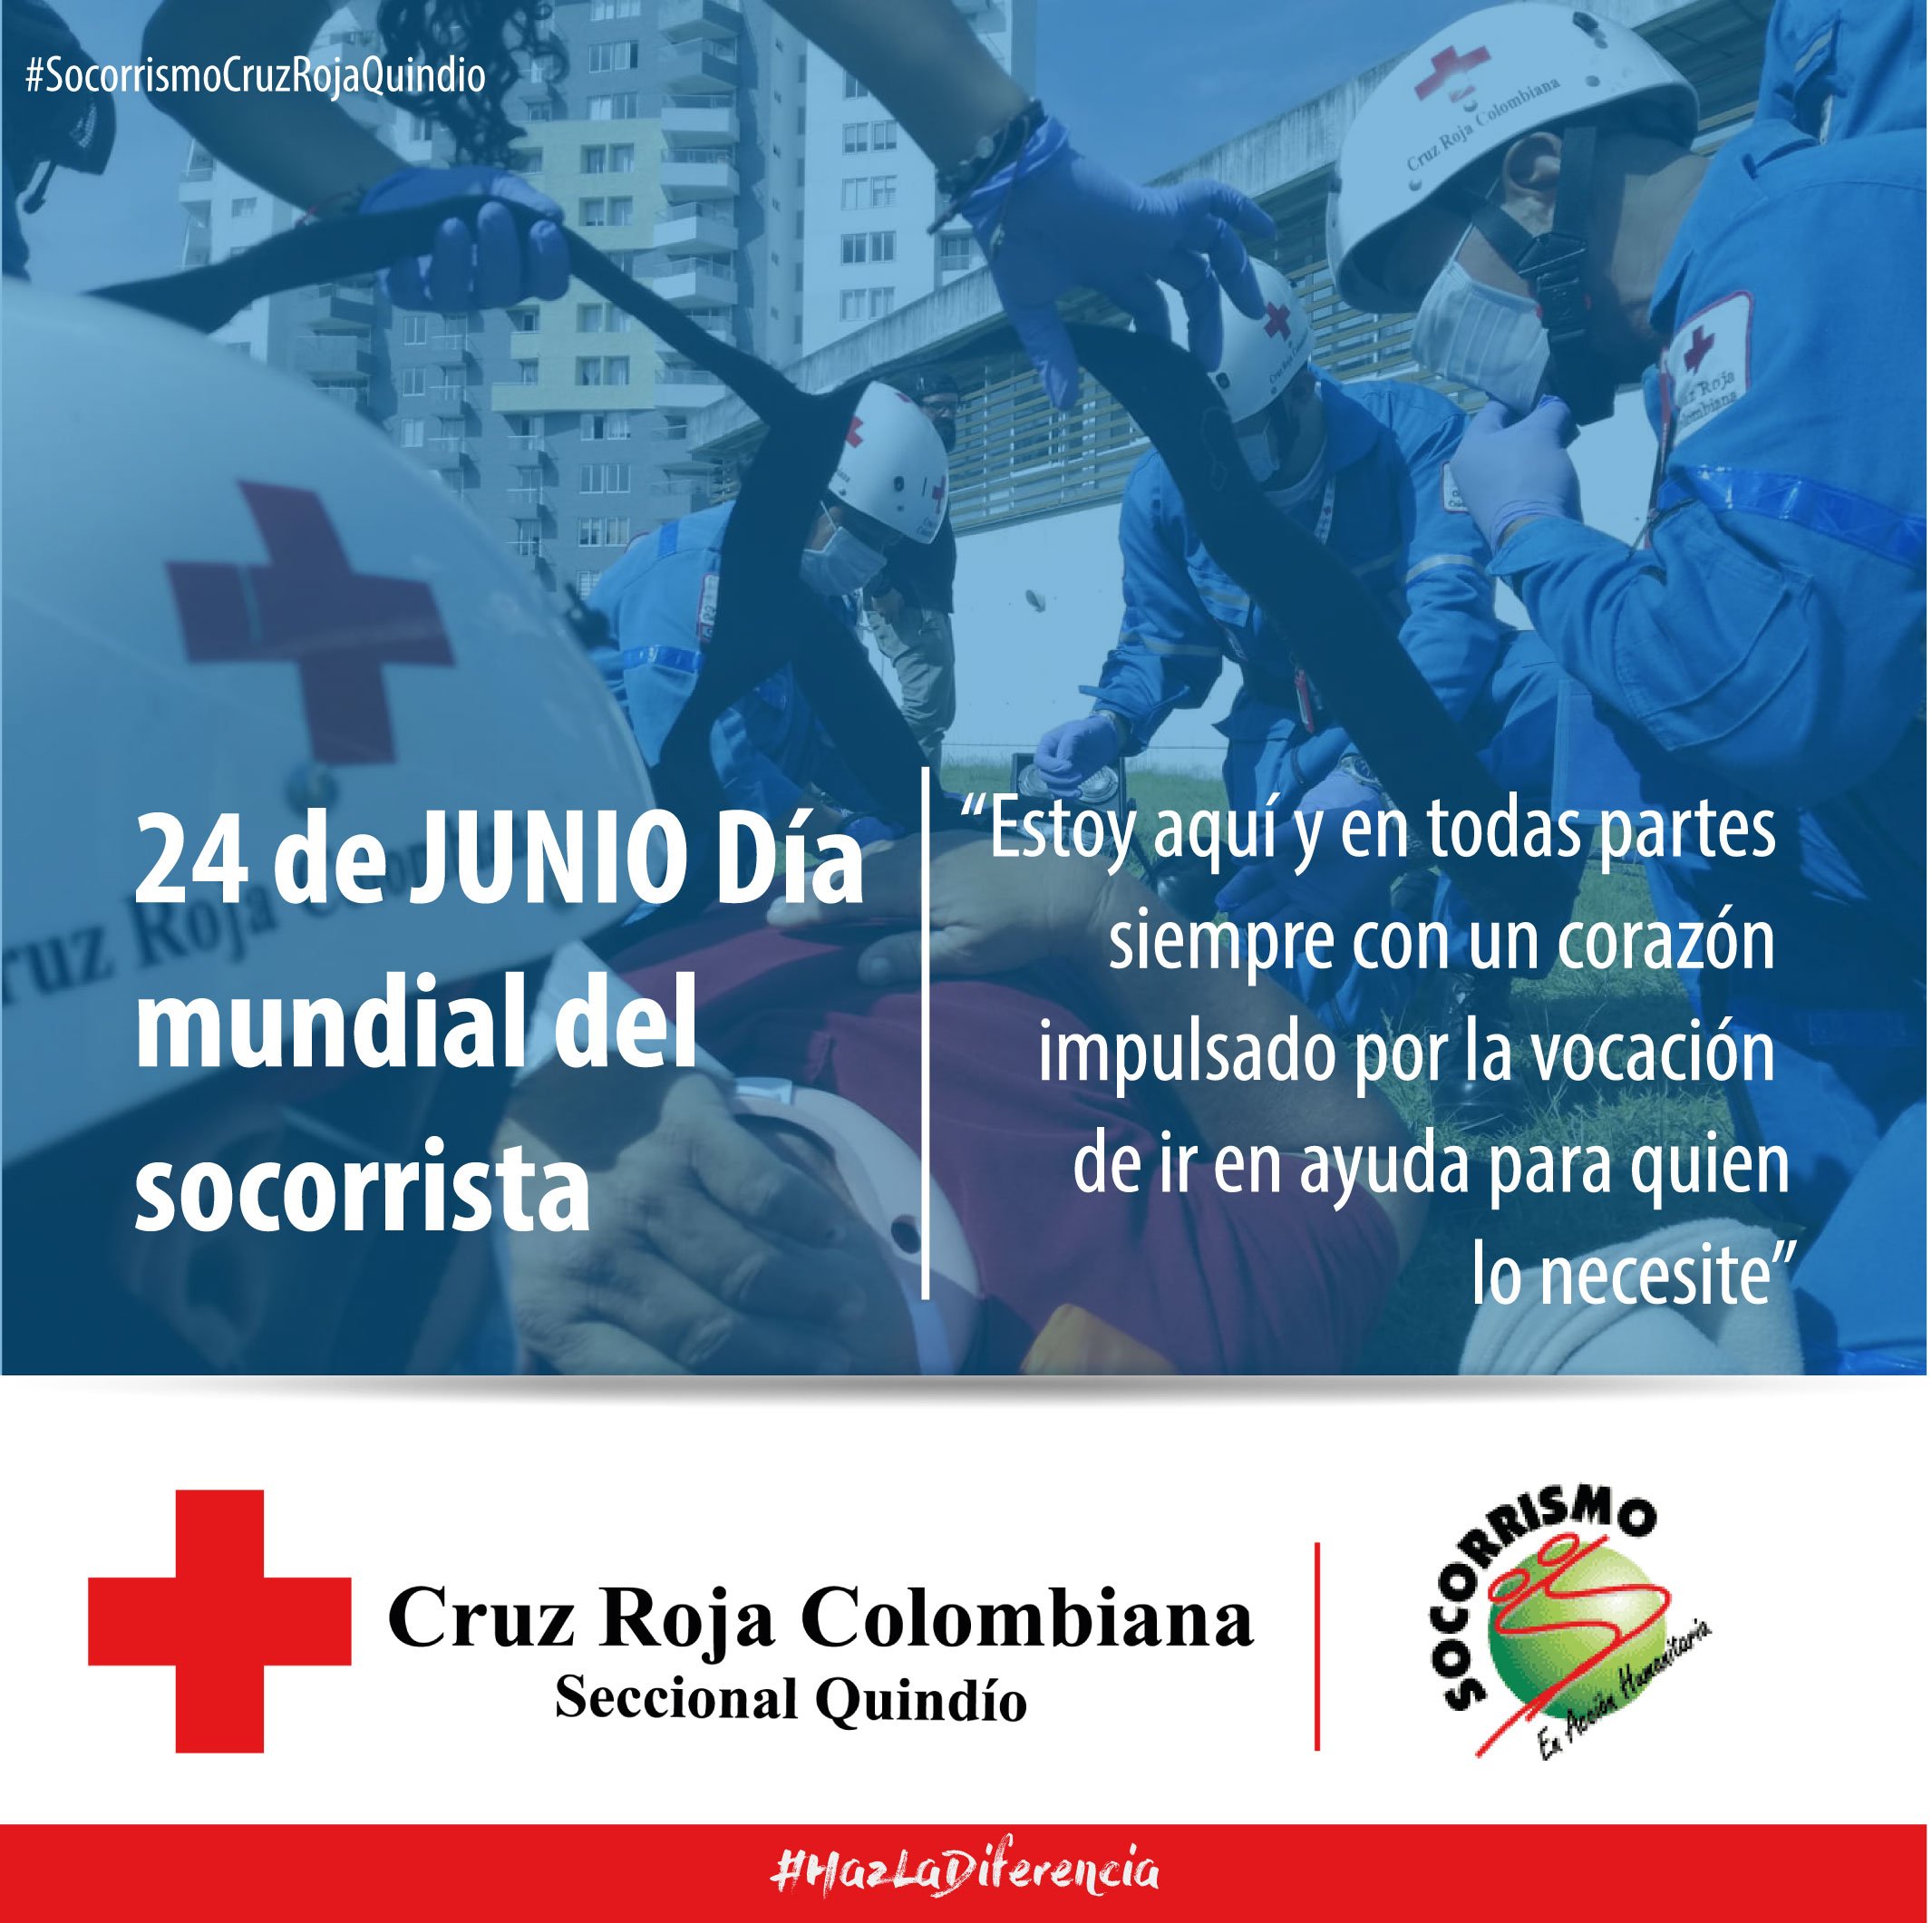 Cruz Roja Quindío on Twitter: "Estoy aquí y en todas #SocorrismoCruzRojaQuindío - 24 de Junio Día Mundial Del Socorrista. @cruzrojacol @voluntariadocrc https://t.co/FS3CNkwUcQ" / Twitter